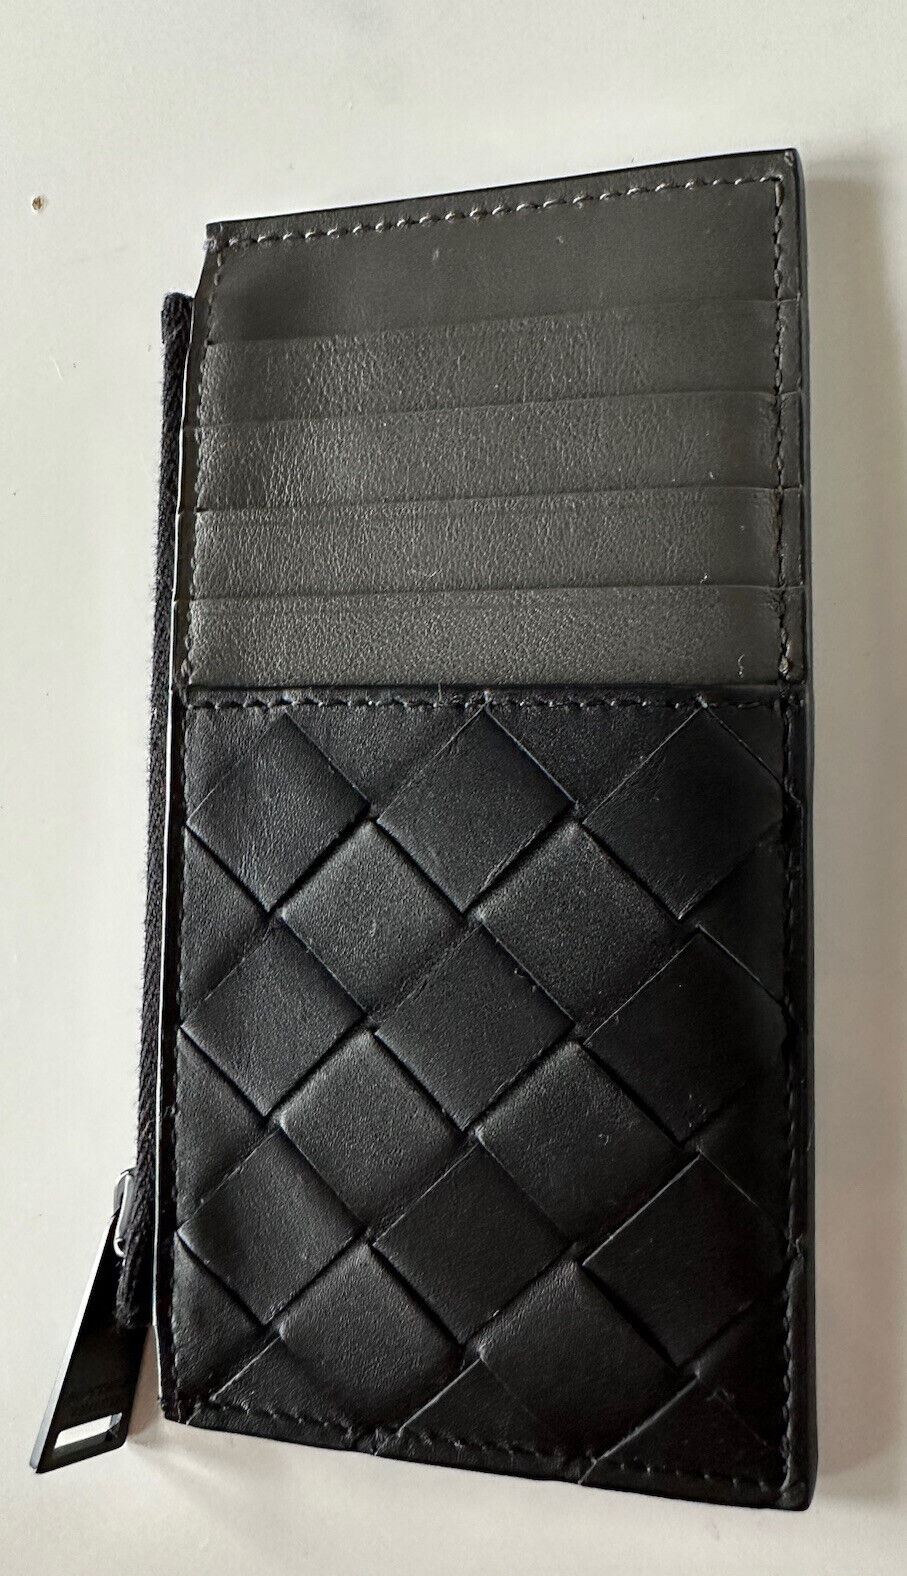 NWT $520 Тонкий кожаный кошелек Bottega Veneta Intreccio Черный/Графит 591379